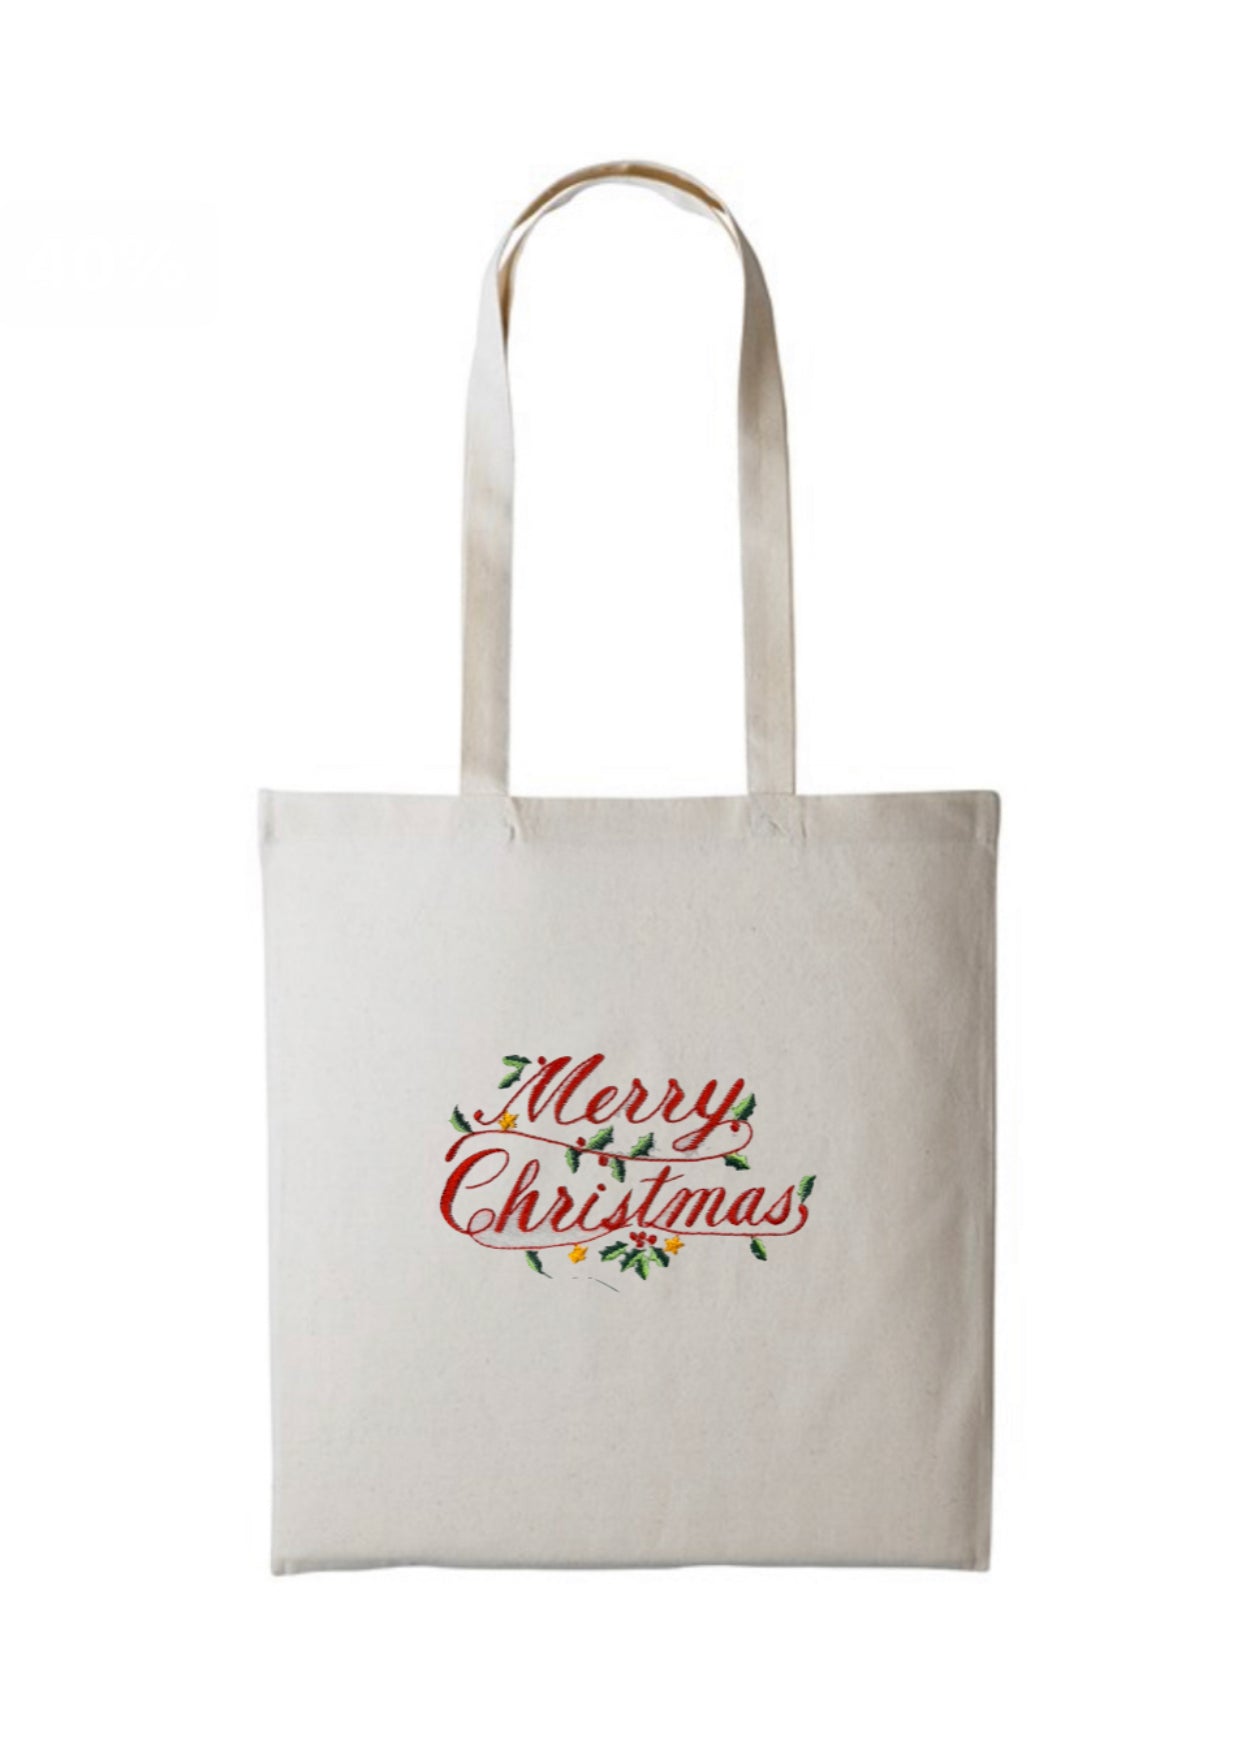 Merry Christmas Long Handle Cotton Tote Bag For Life